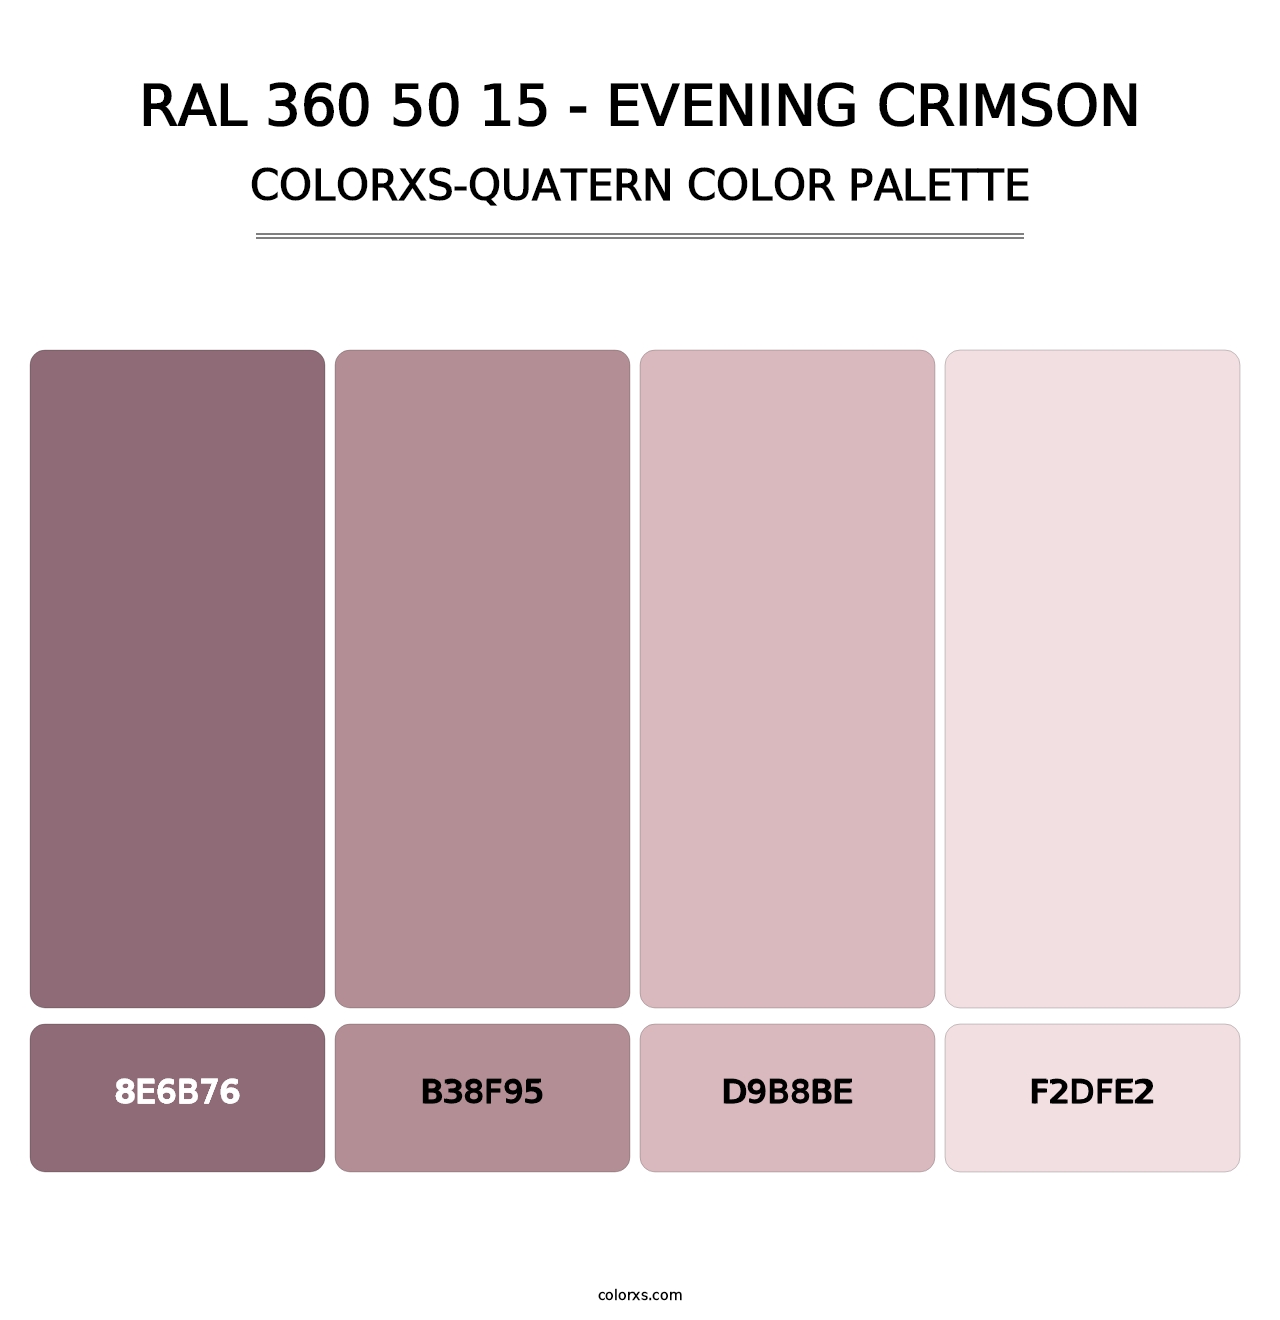 RAL 360 50 15 - Evening Crimson - Colorxs Quatern Palette